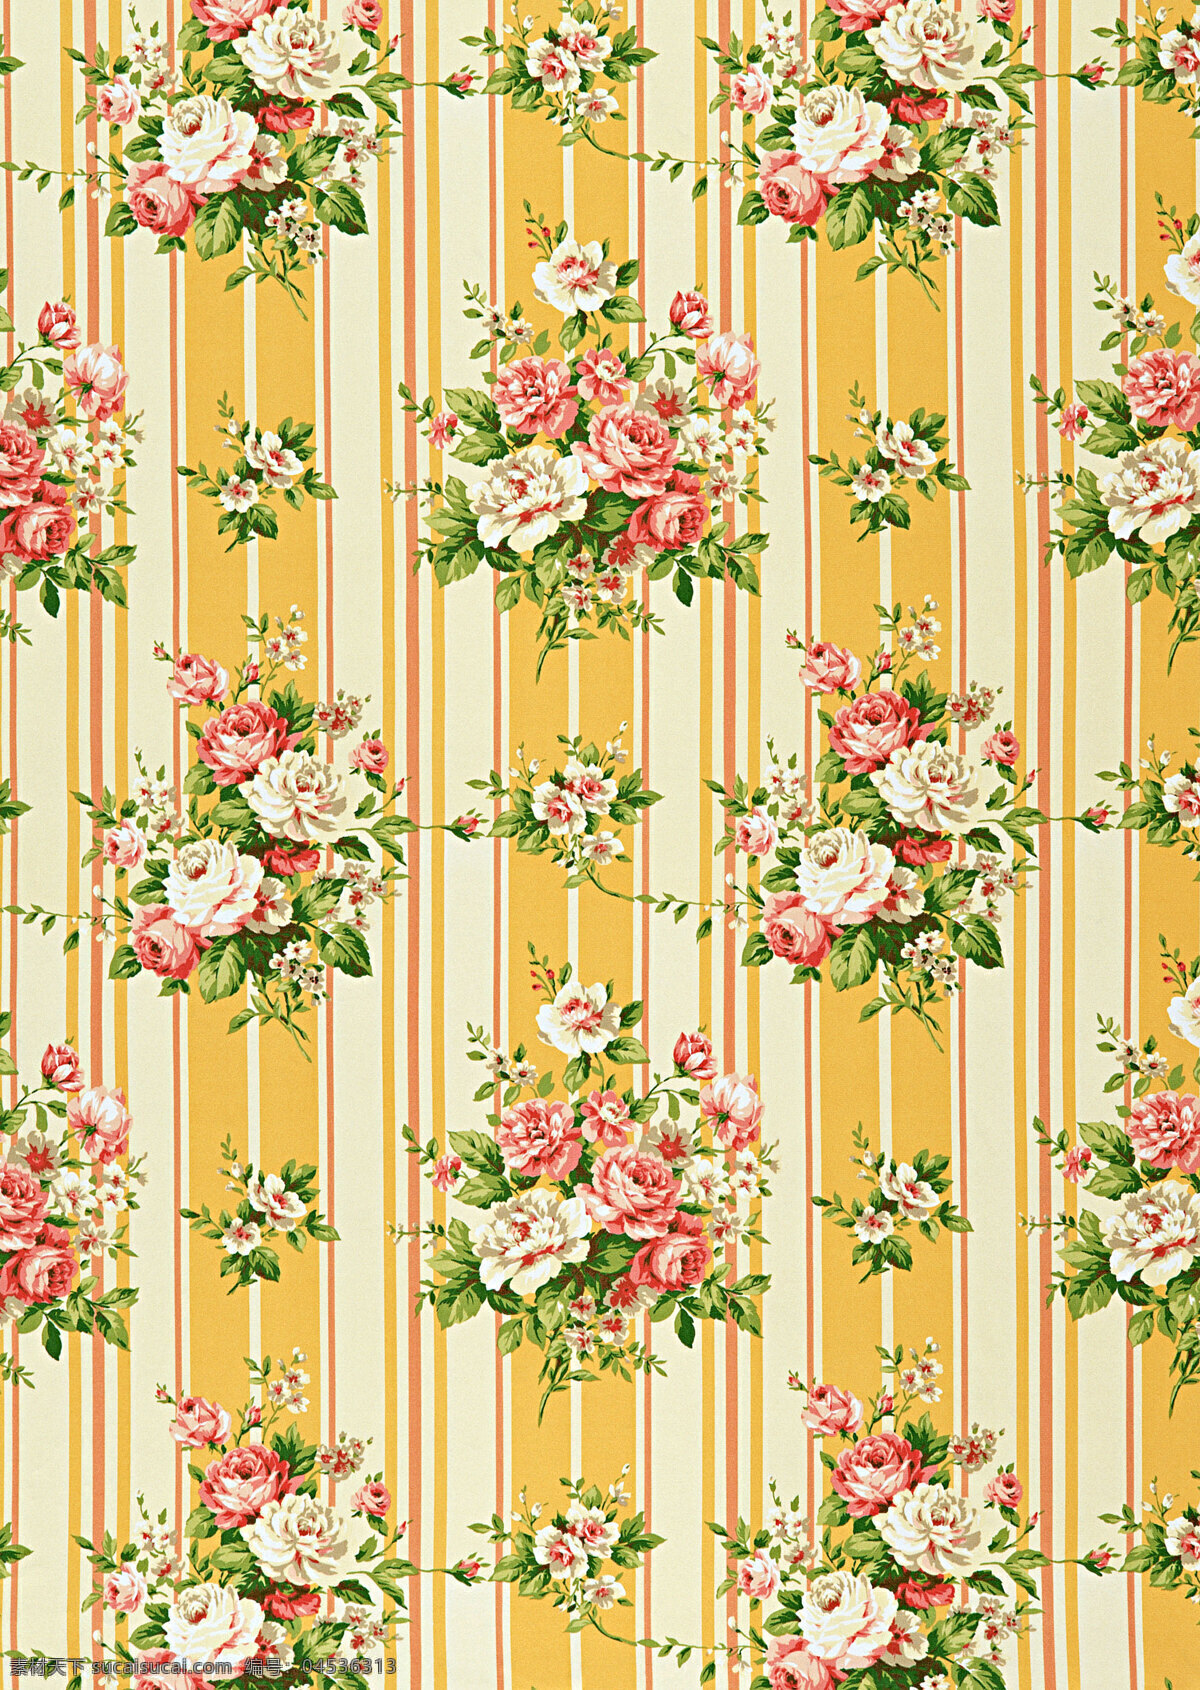 黄色 漂亮 花朵 底纹 西式花纹 西式 布纹 纺织品图案 背景 背景图片